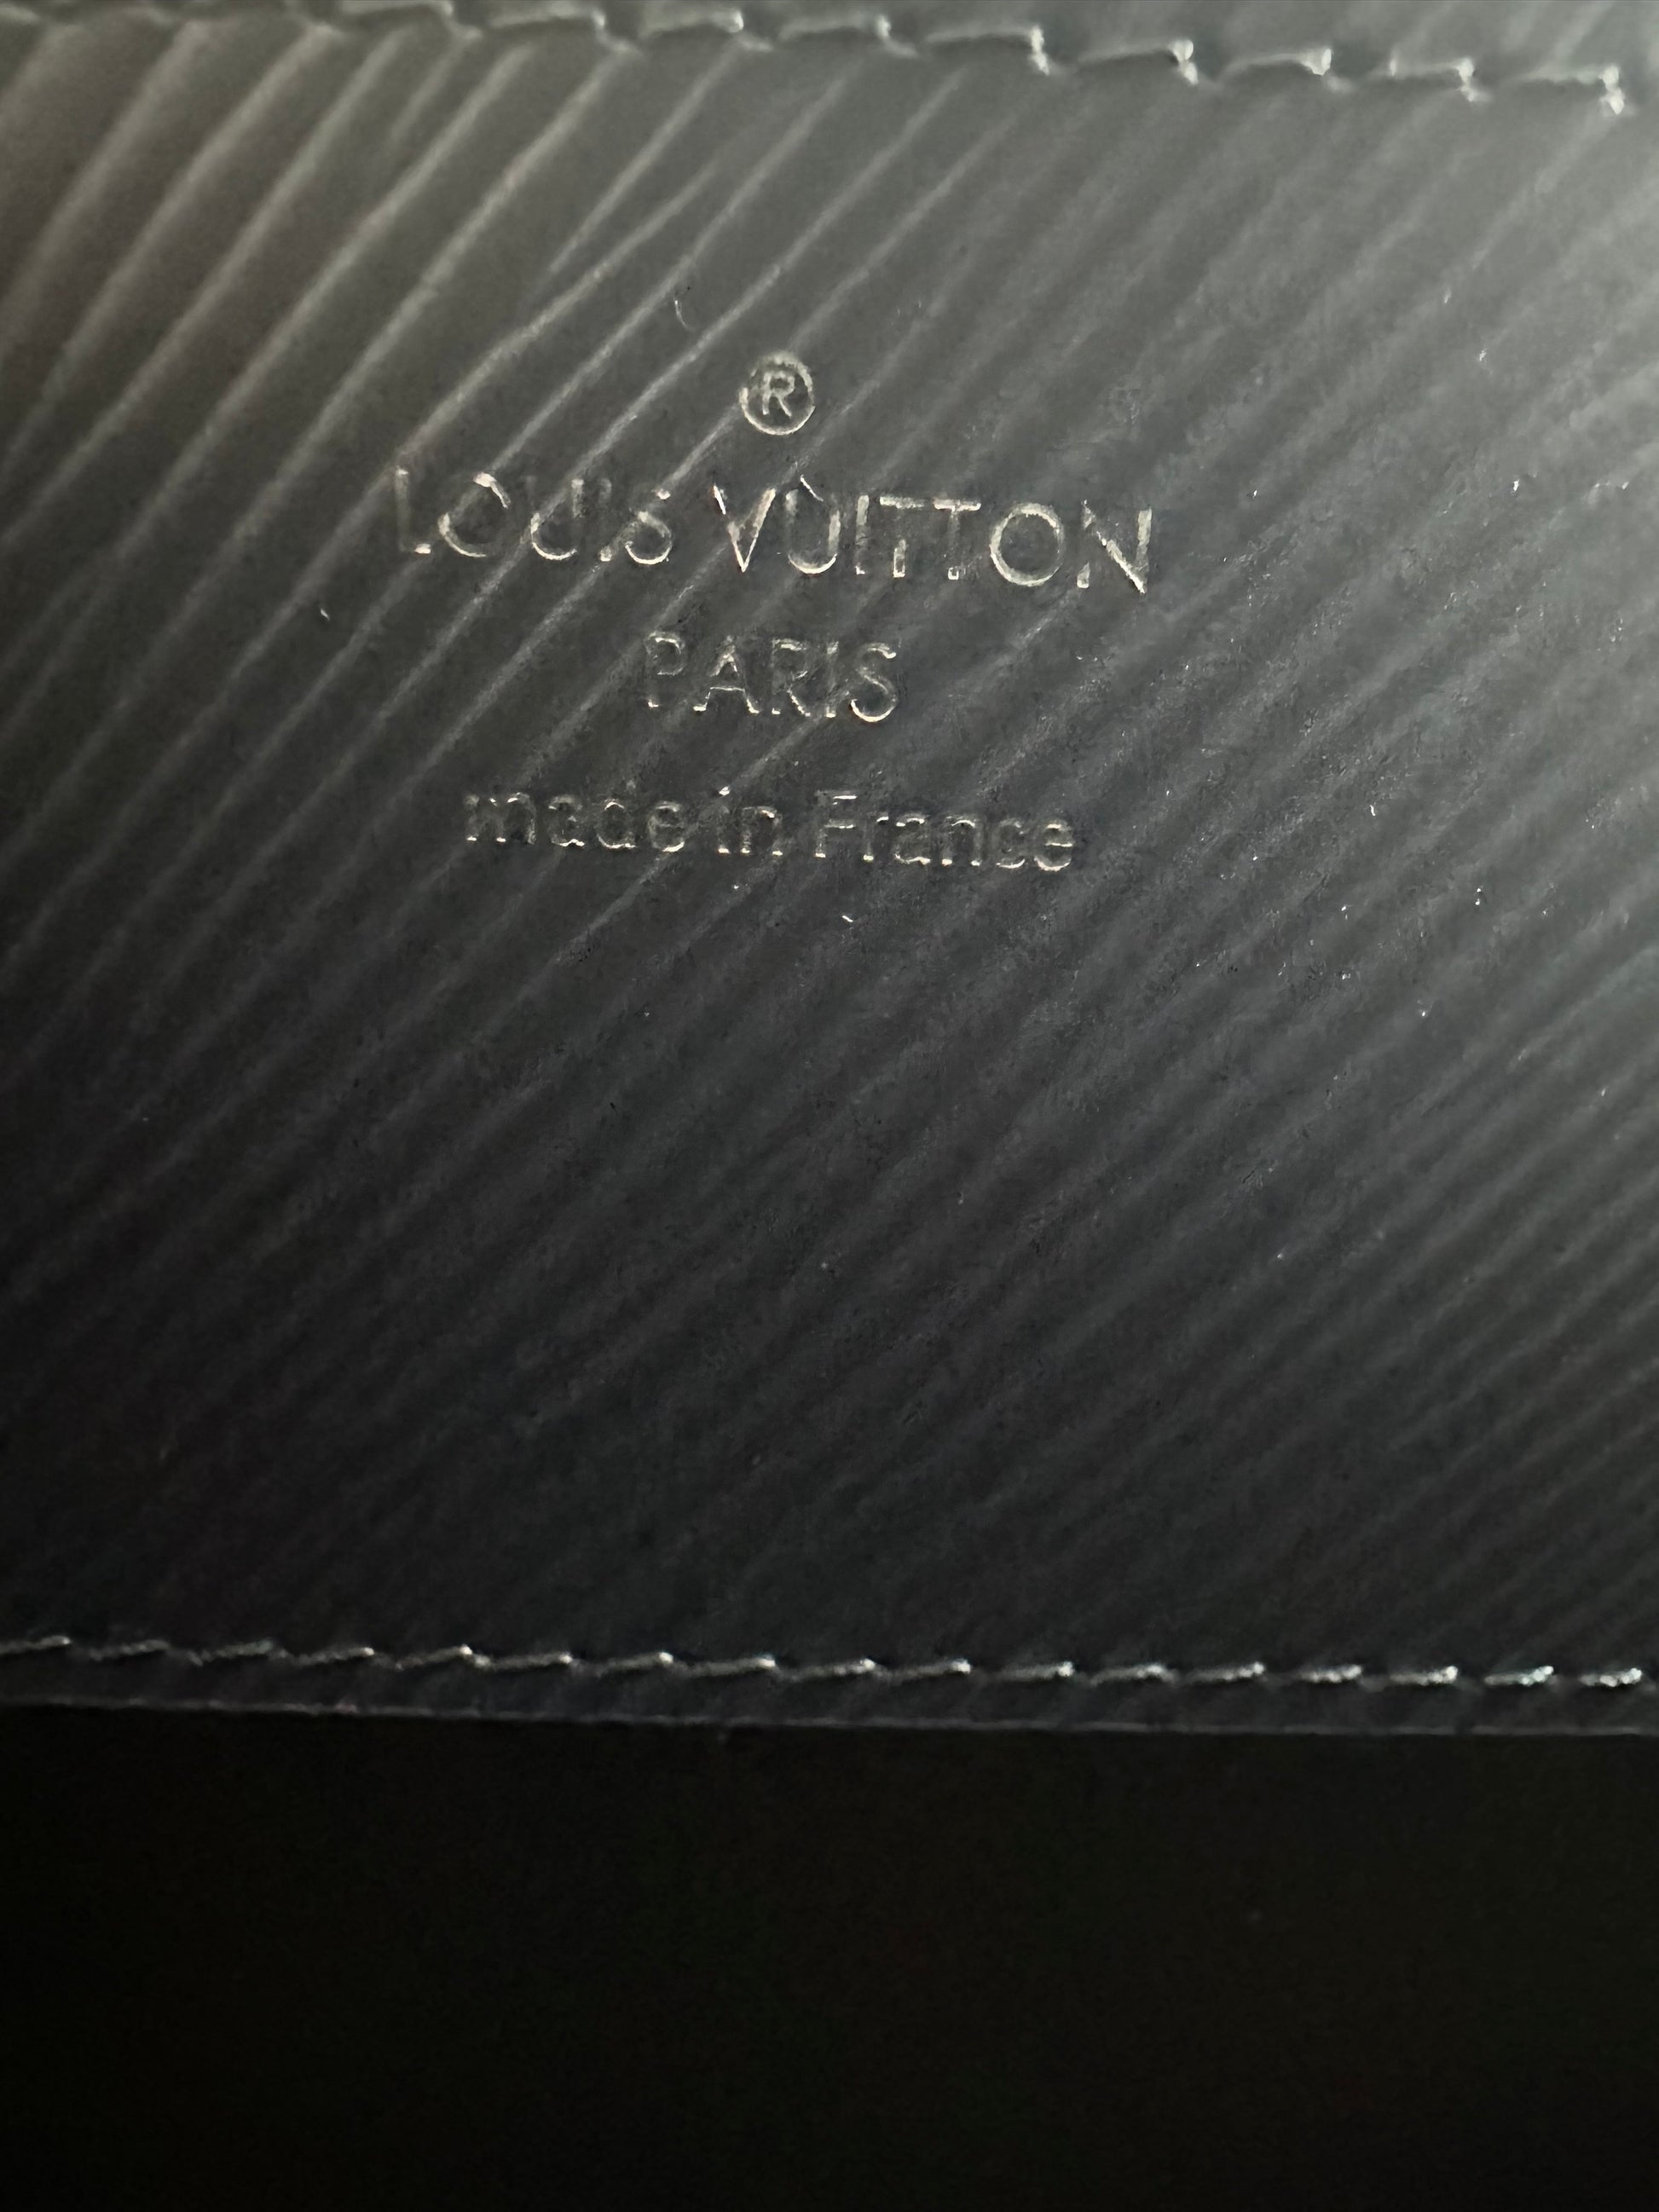 Louis Vuitton Twist MM Indigo Epi Leather Bag –